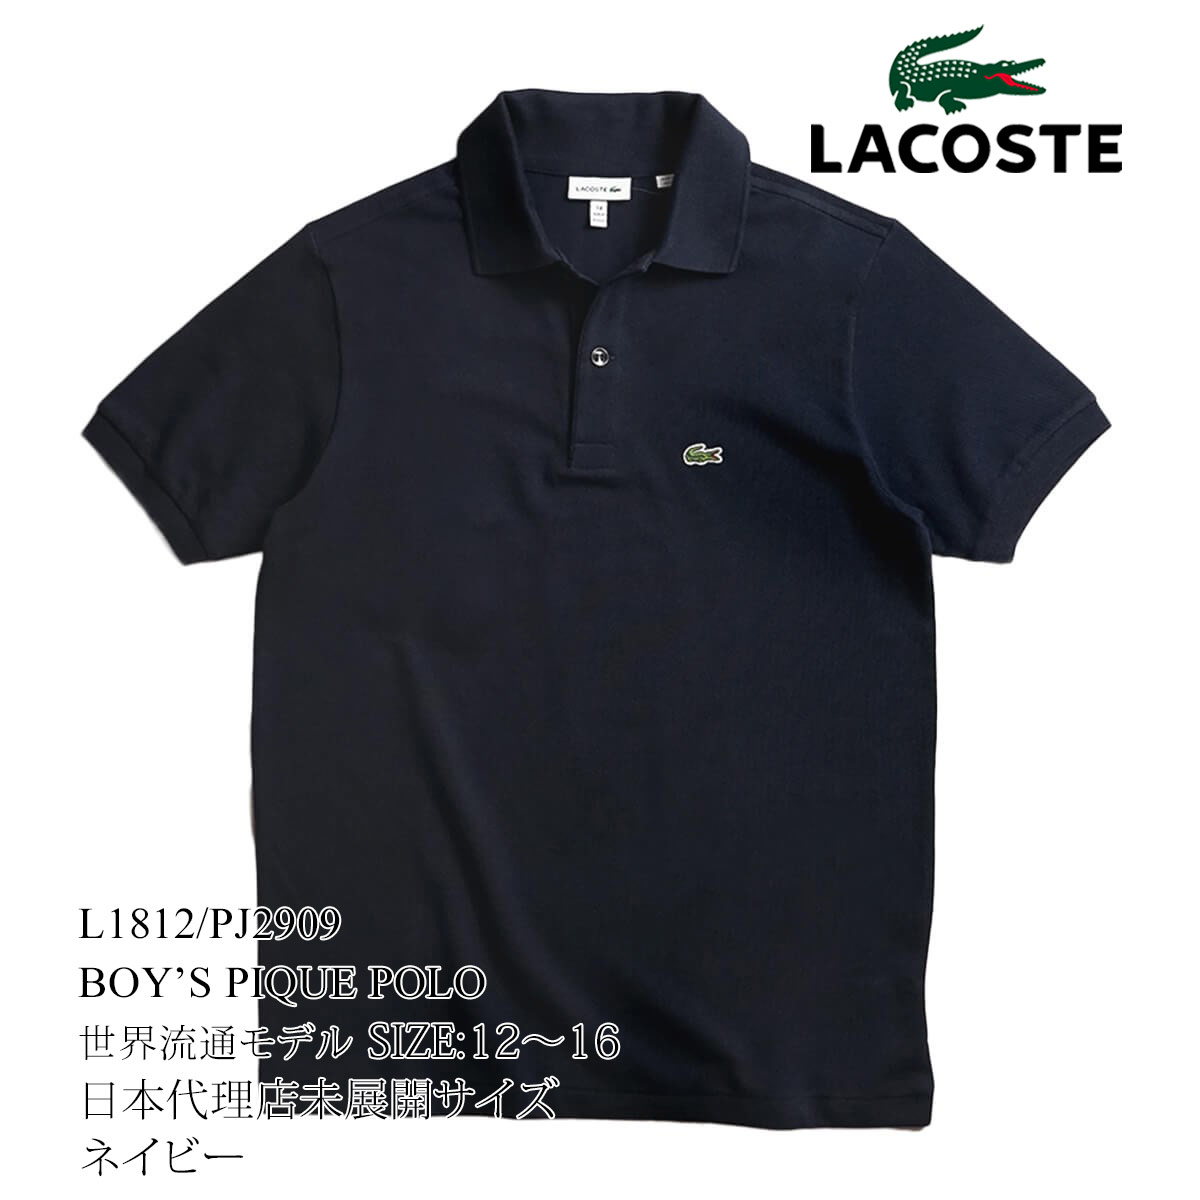 ラコステ LACOSTE PJ2909/L1812 ボーイズ 半袖 ポロシャツ 世界流通モデル ｜ ...